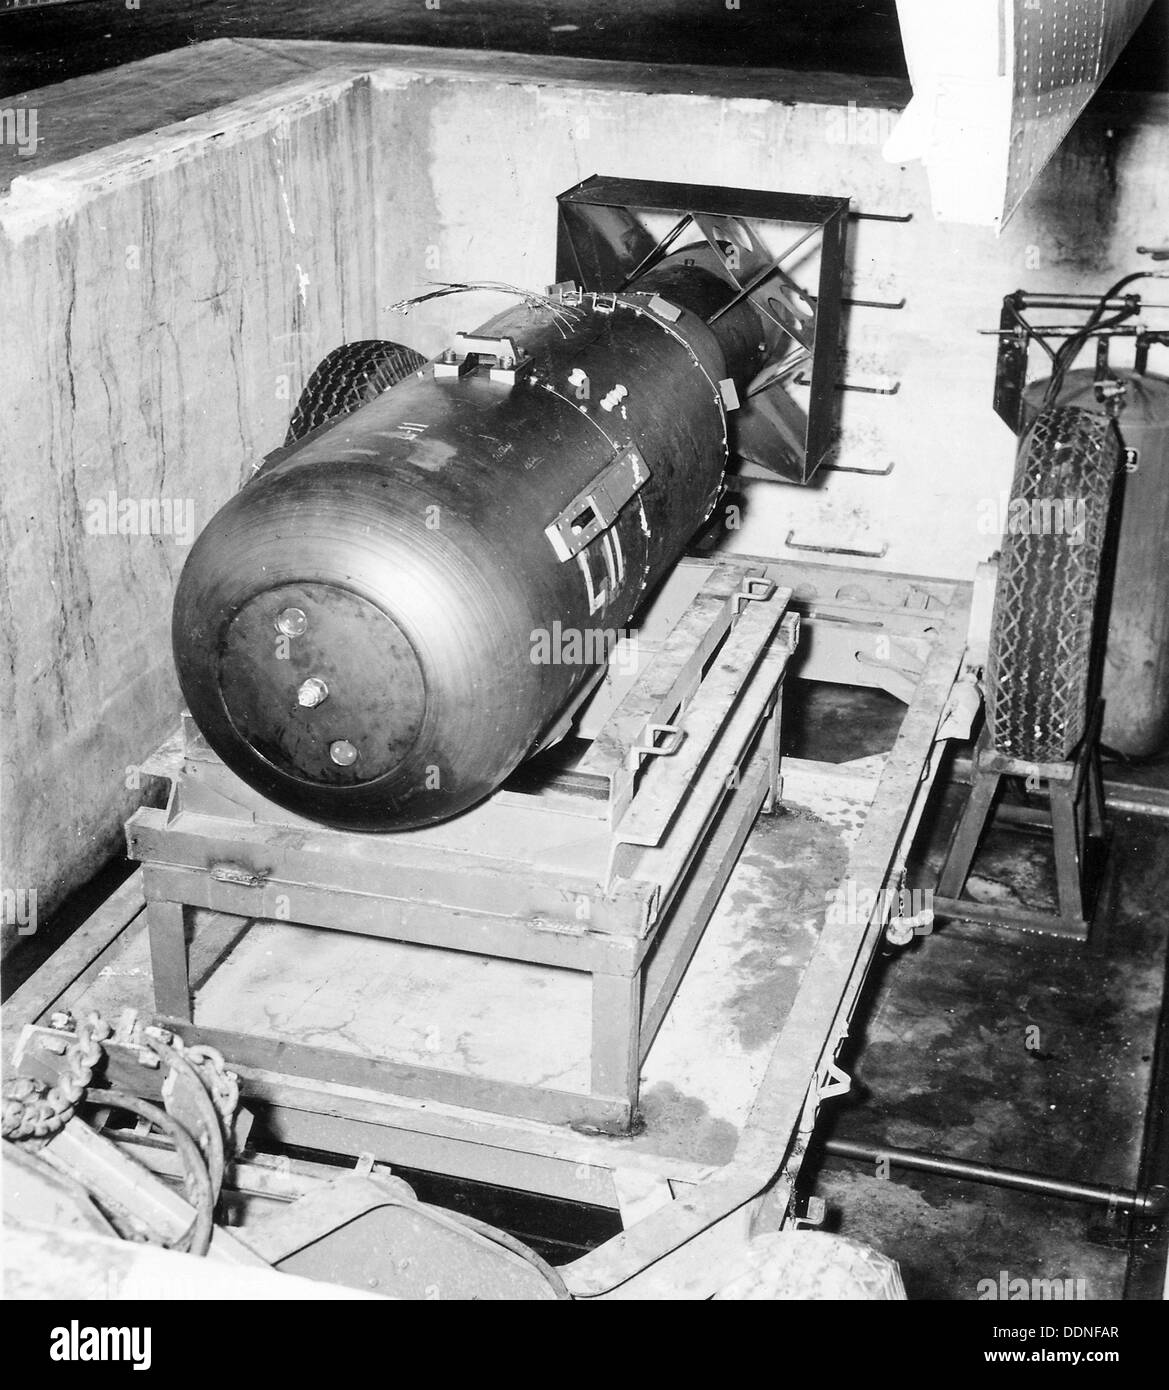 Bomba atómica fotografías e imágenes de alta resolución - Alamy